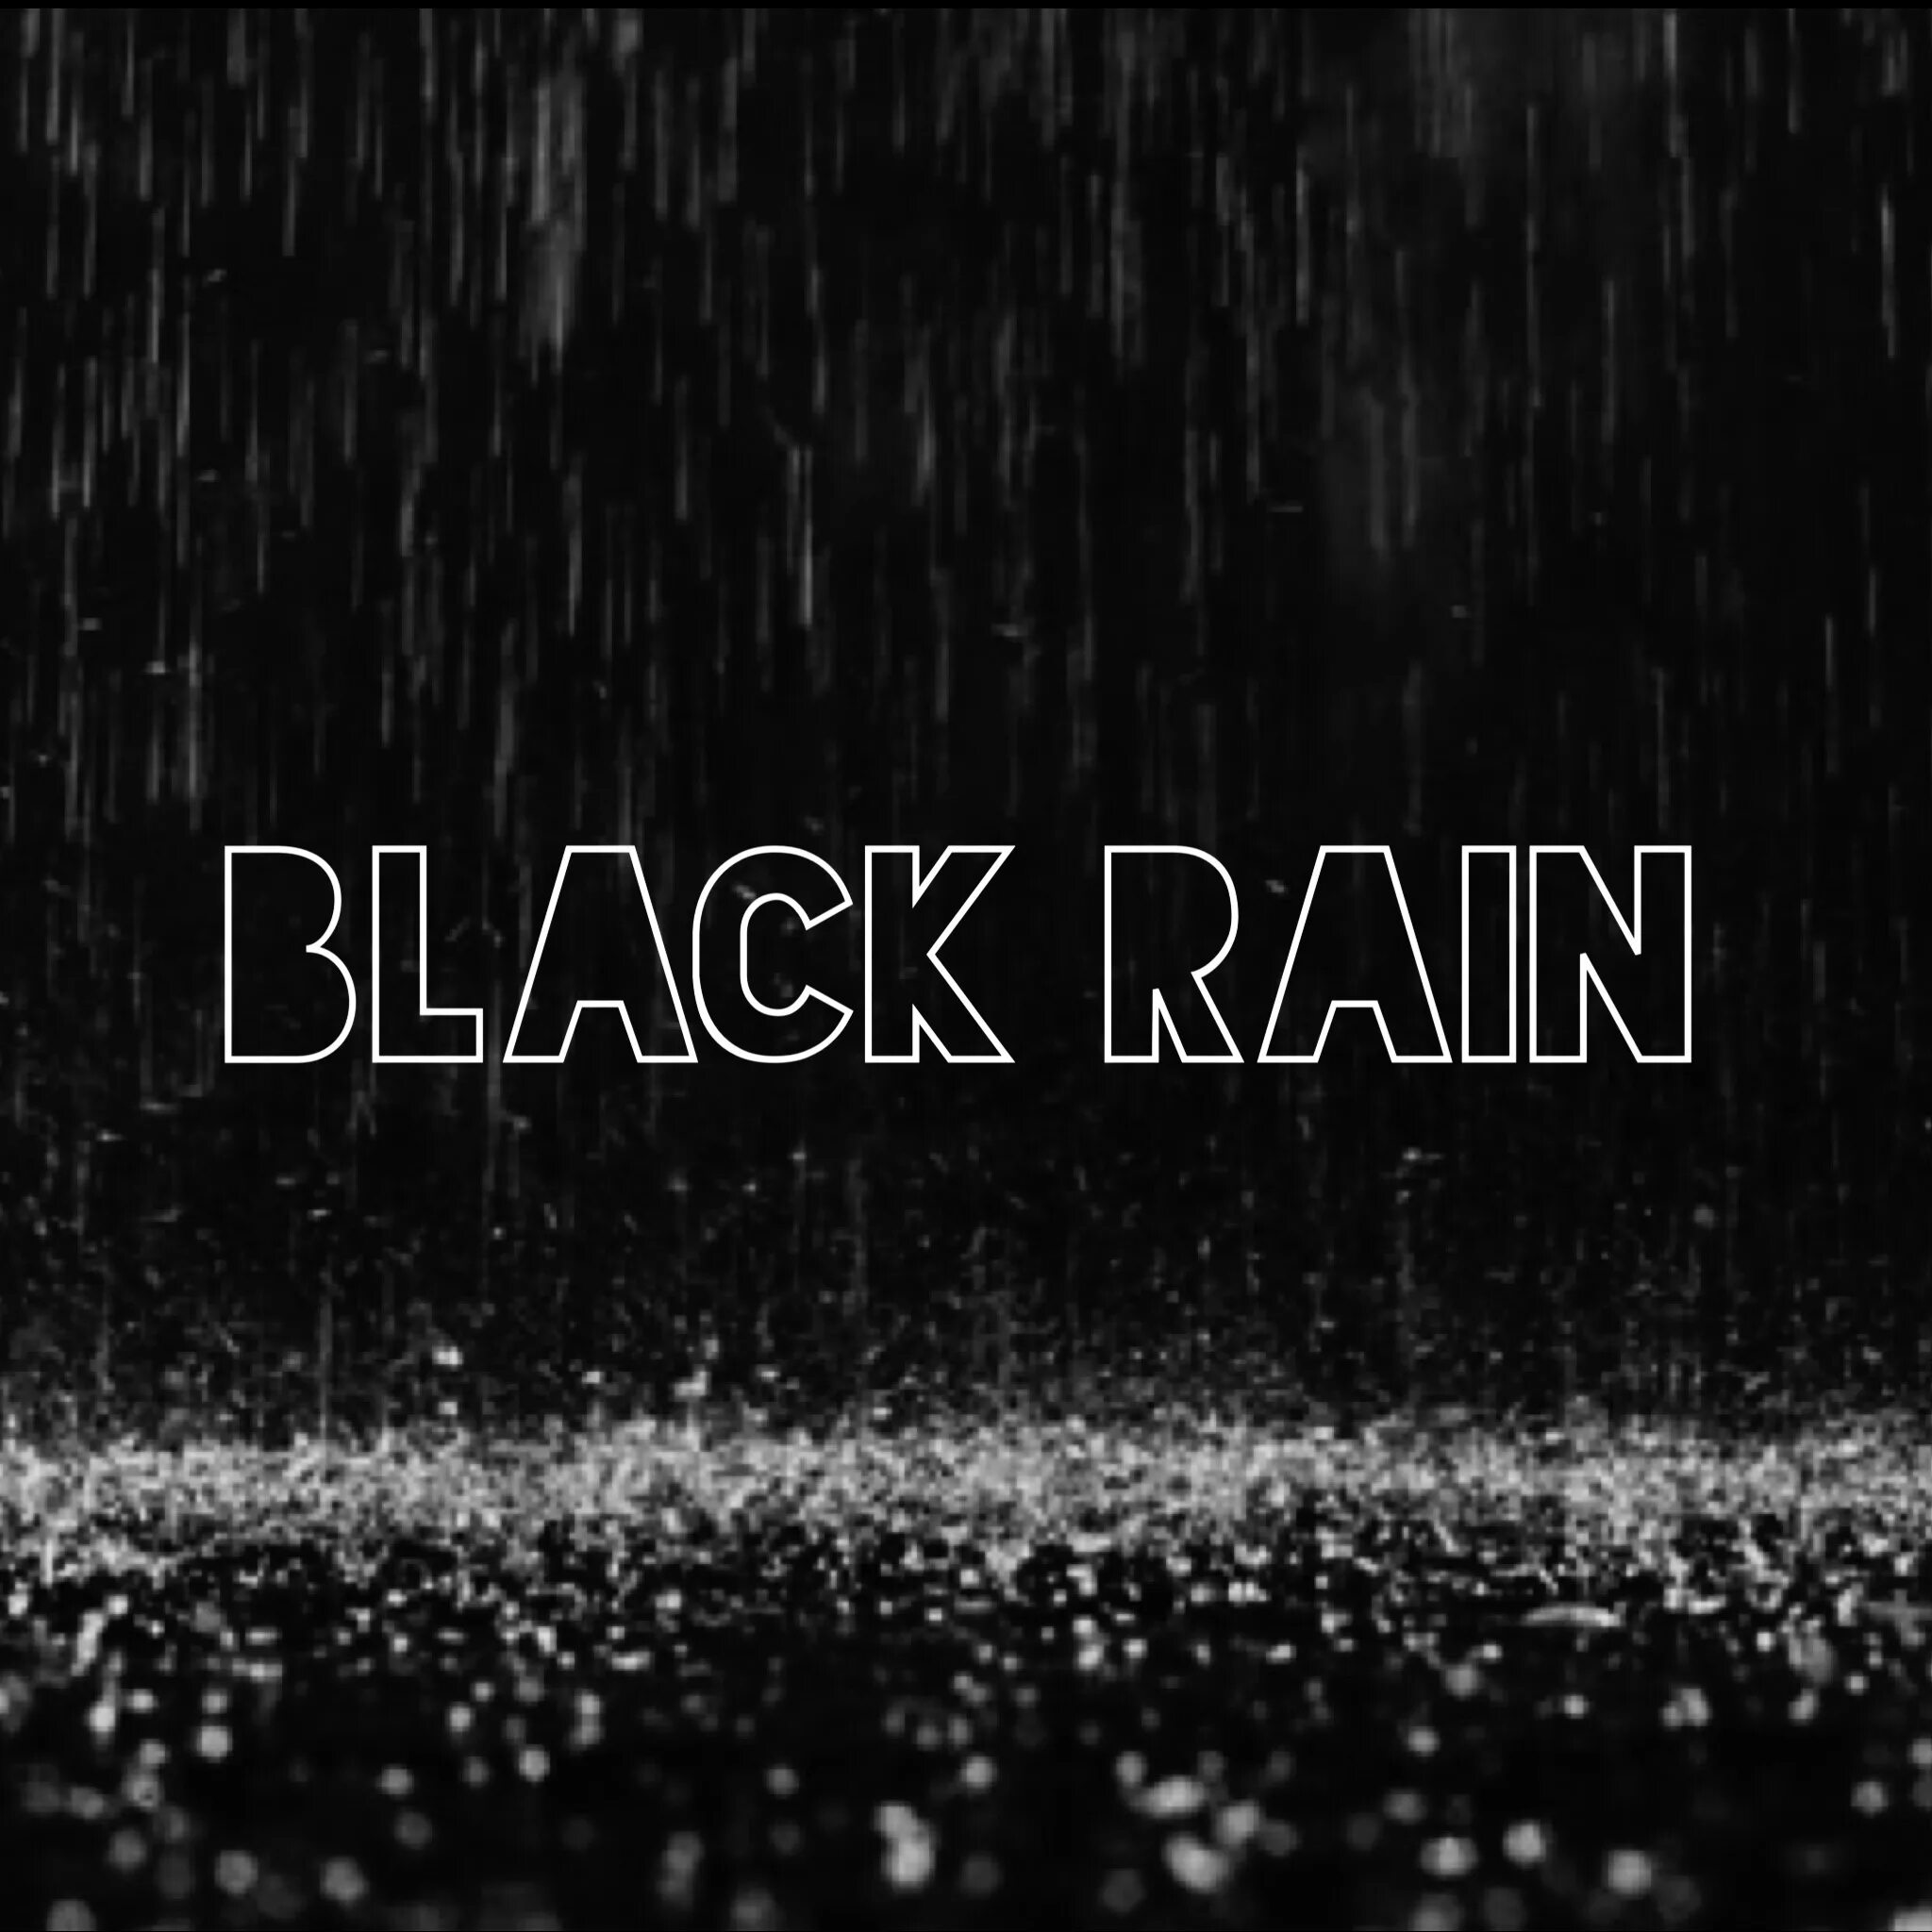 Черный дождь текст. Черный дождь. Дождь на черном фоне. Чёрный дождь (1989) (Black Rain). Дождь обои 1920x1080 черные.